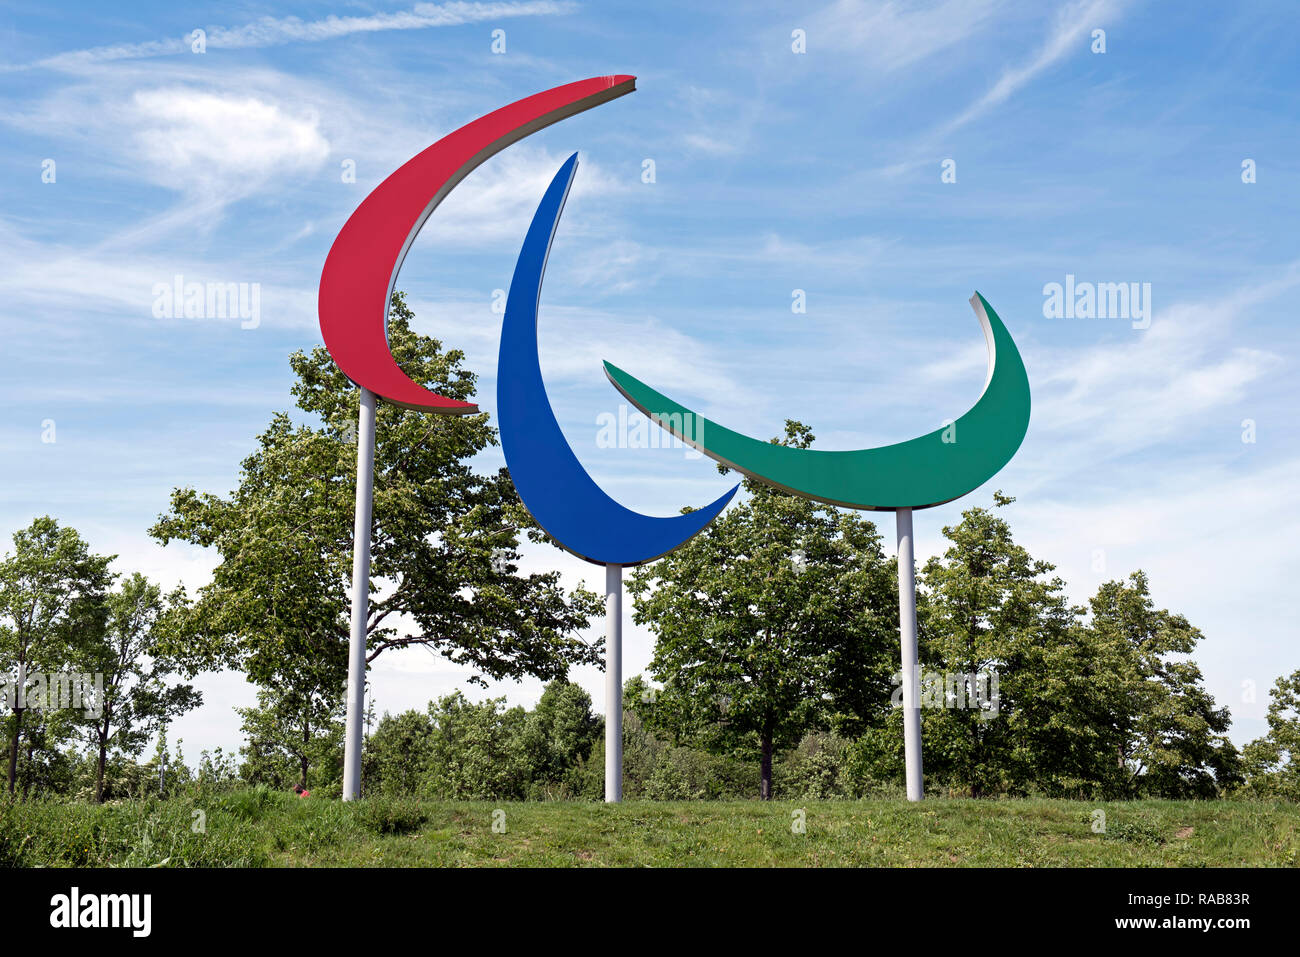 Símbolo de los Juegos Paralímpicos de Queen Elizabeth Olympic Park, Londres, Inglaterra Gran Bretaña UK Foto de stock